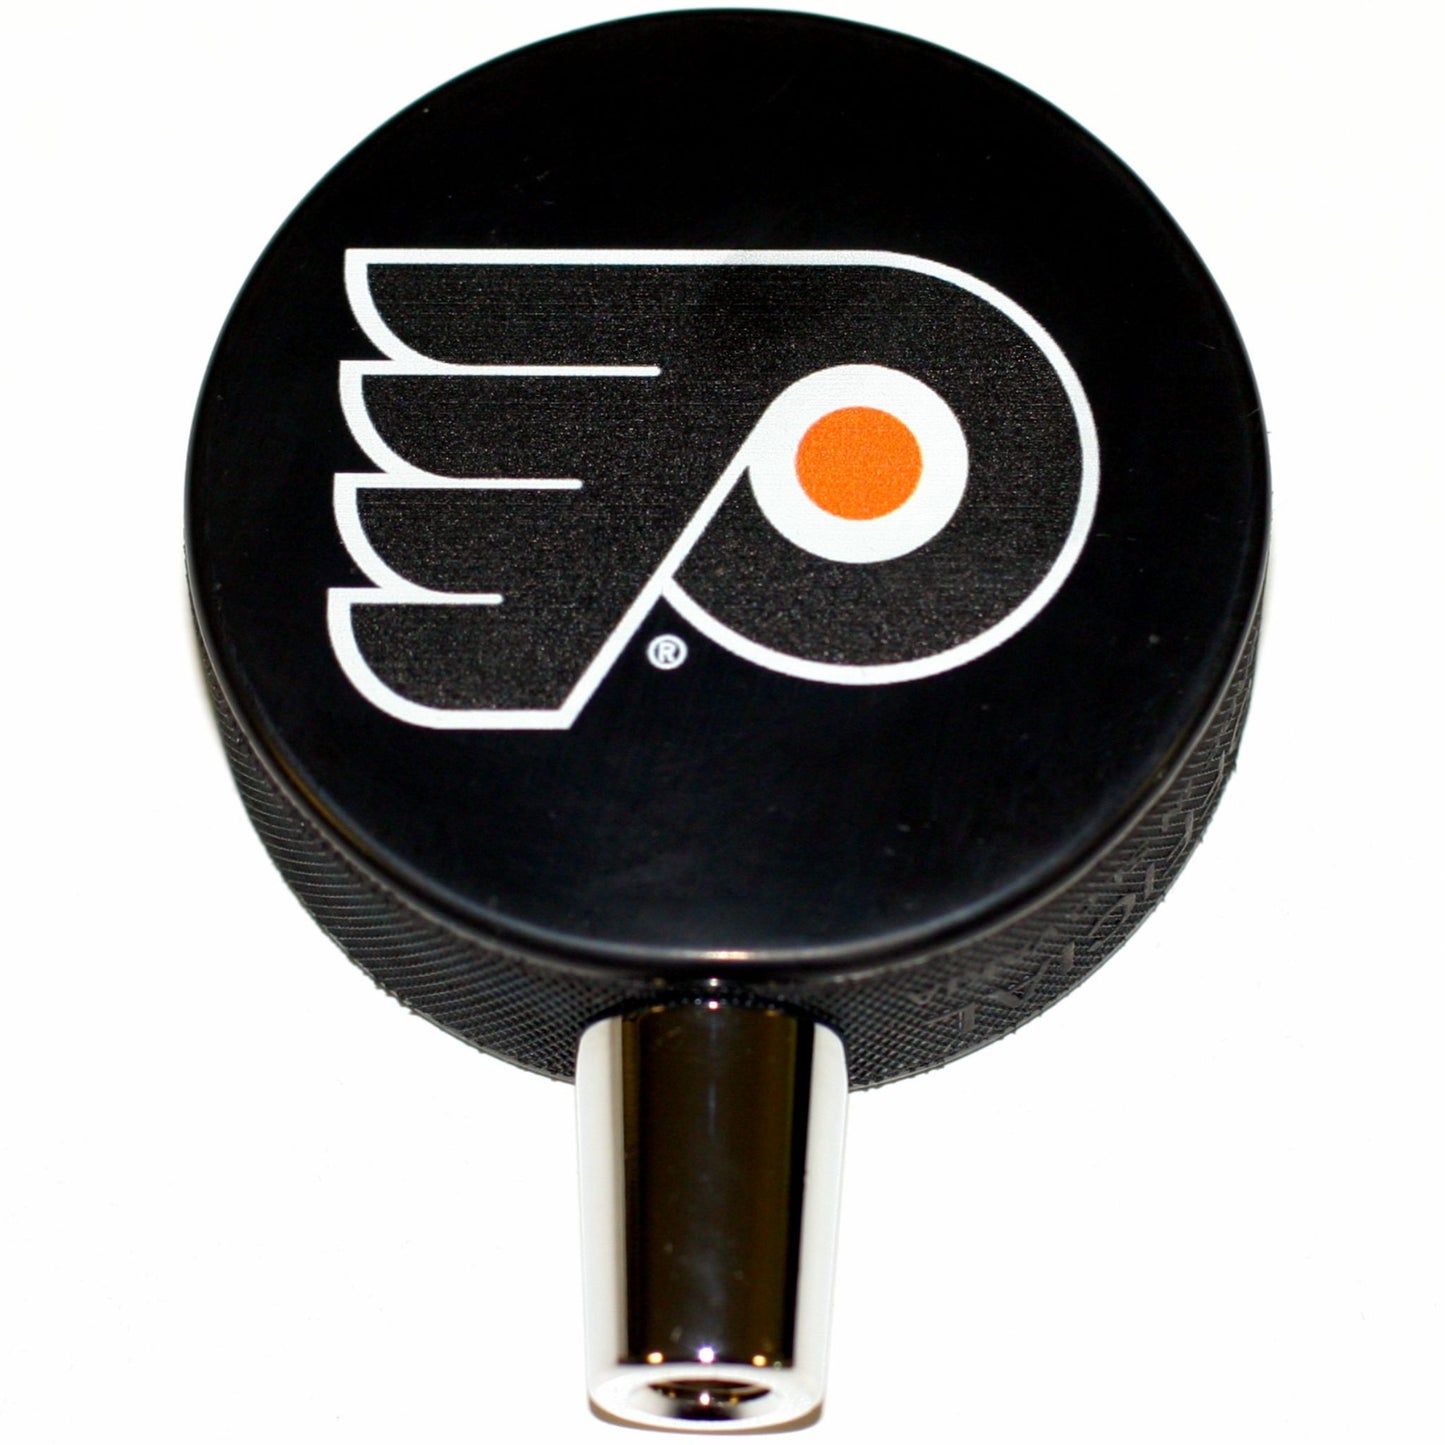 Philadelphia Flyers Basic Series Hockey Puck Beer Tap Handle